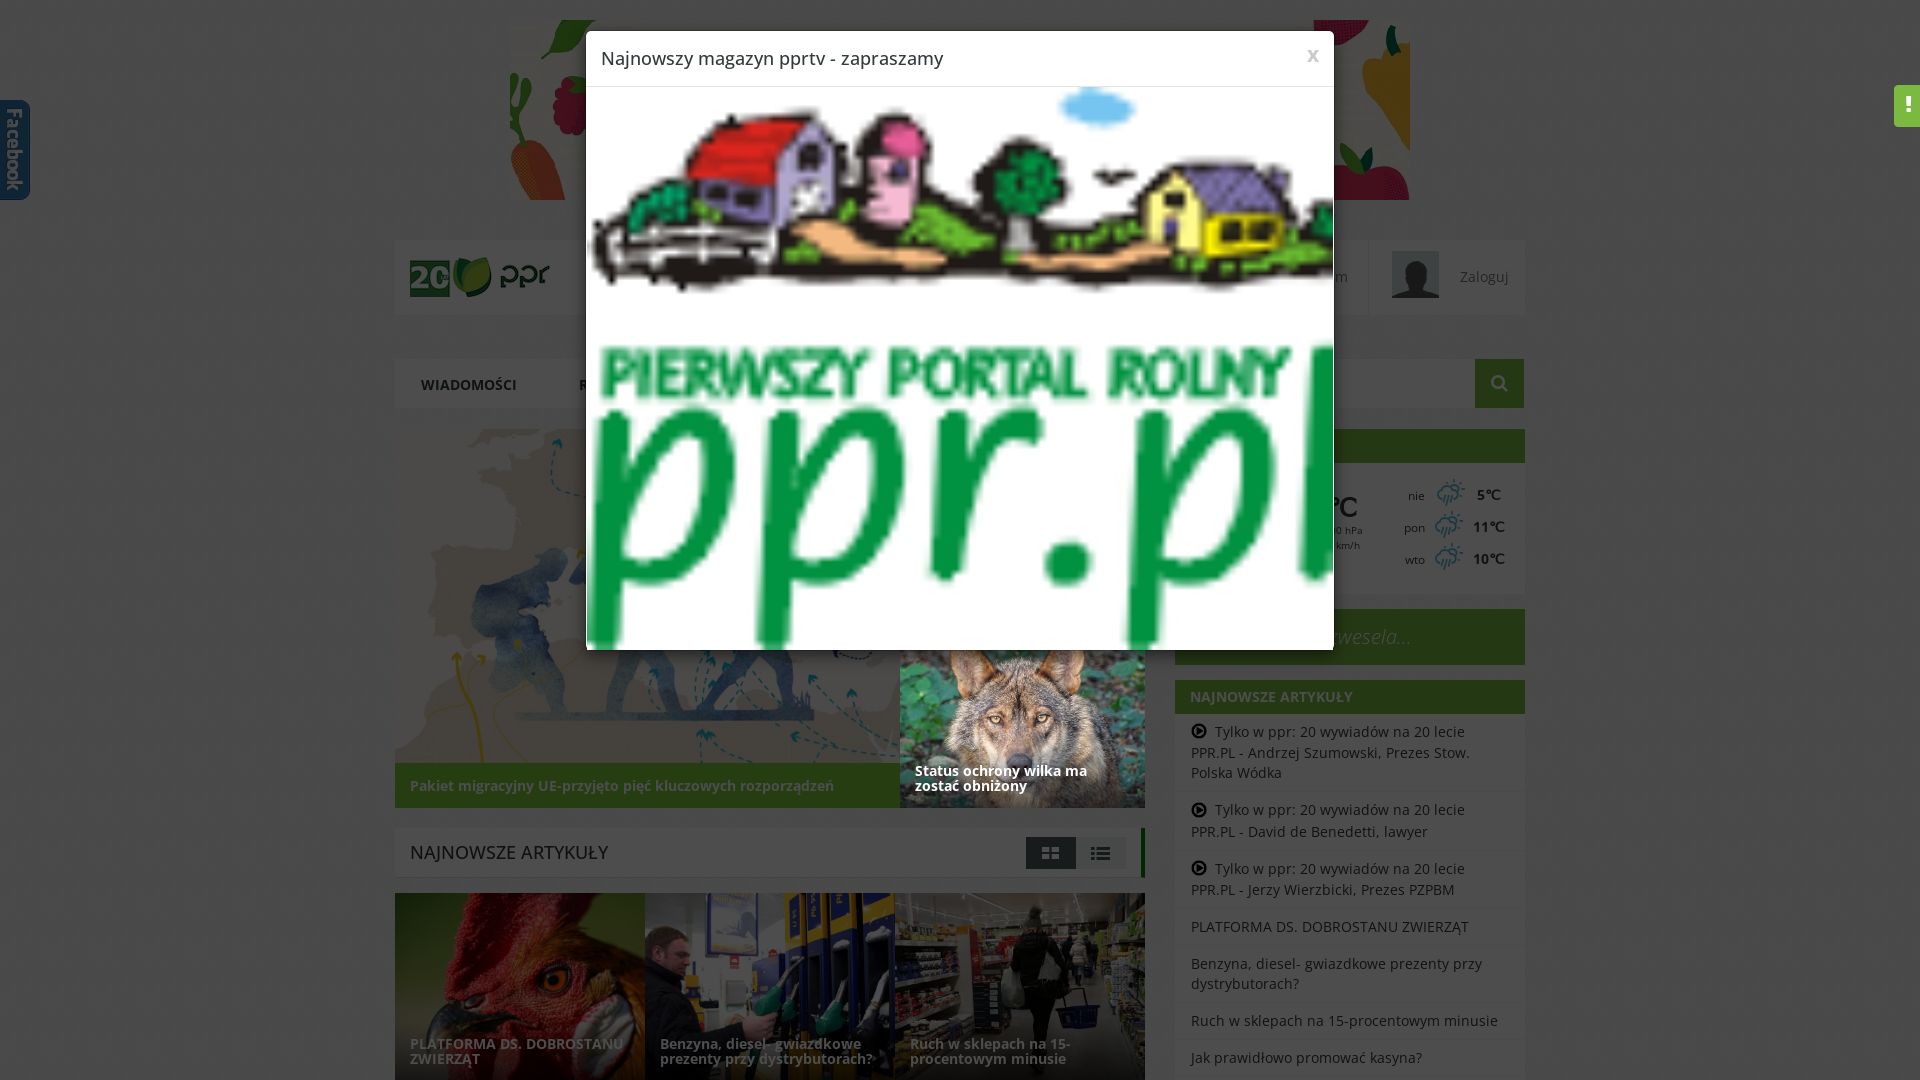 Статус сайта ppr.pl ОНЛАЙН